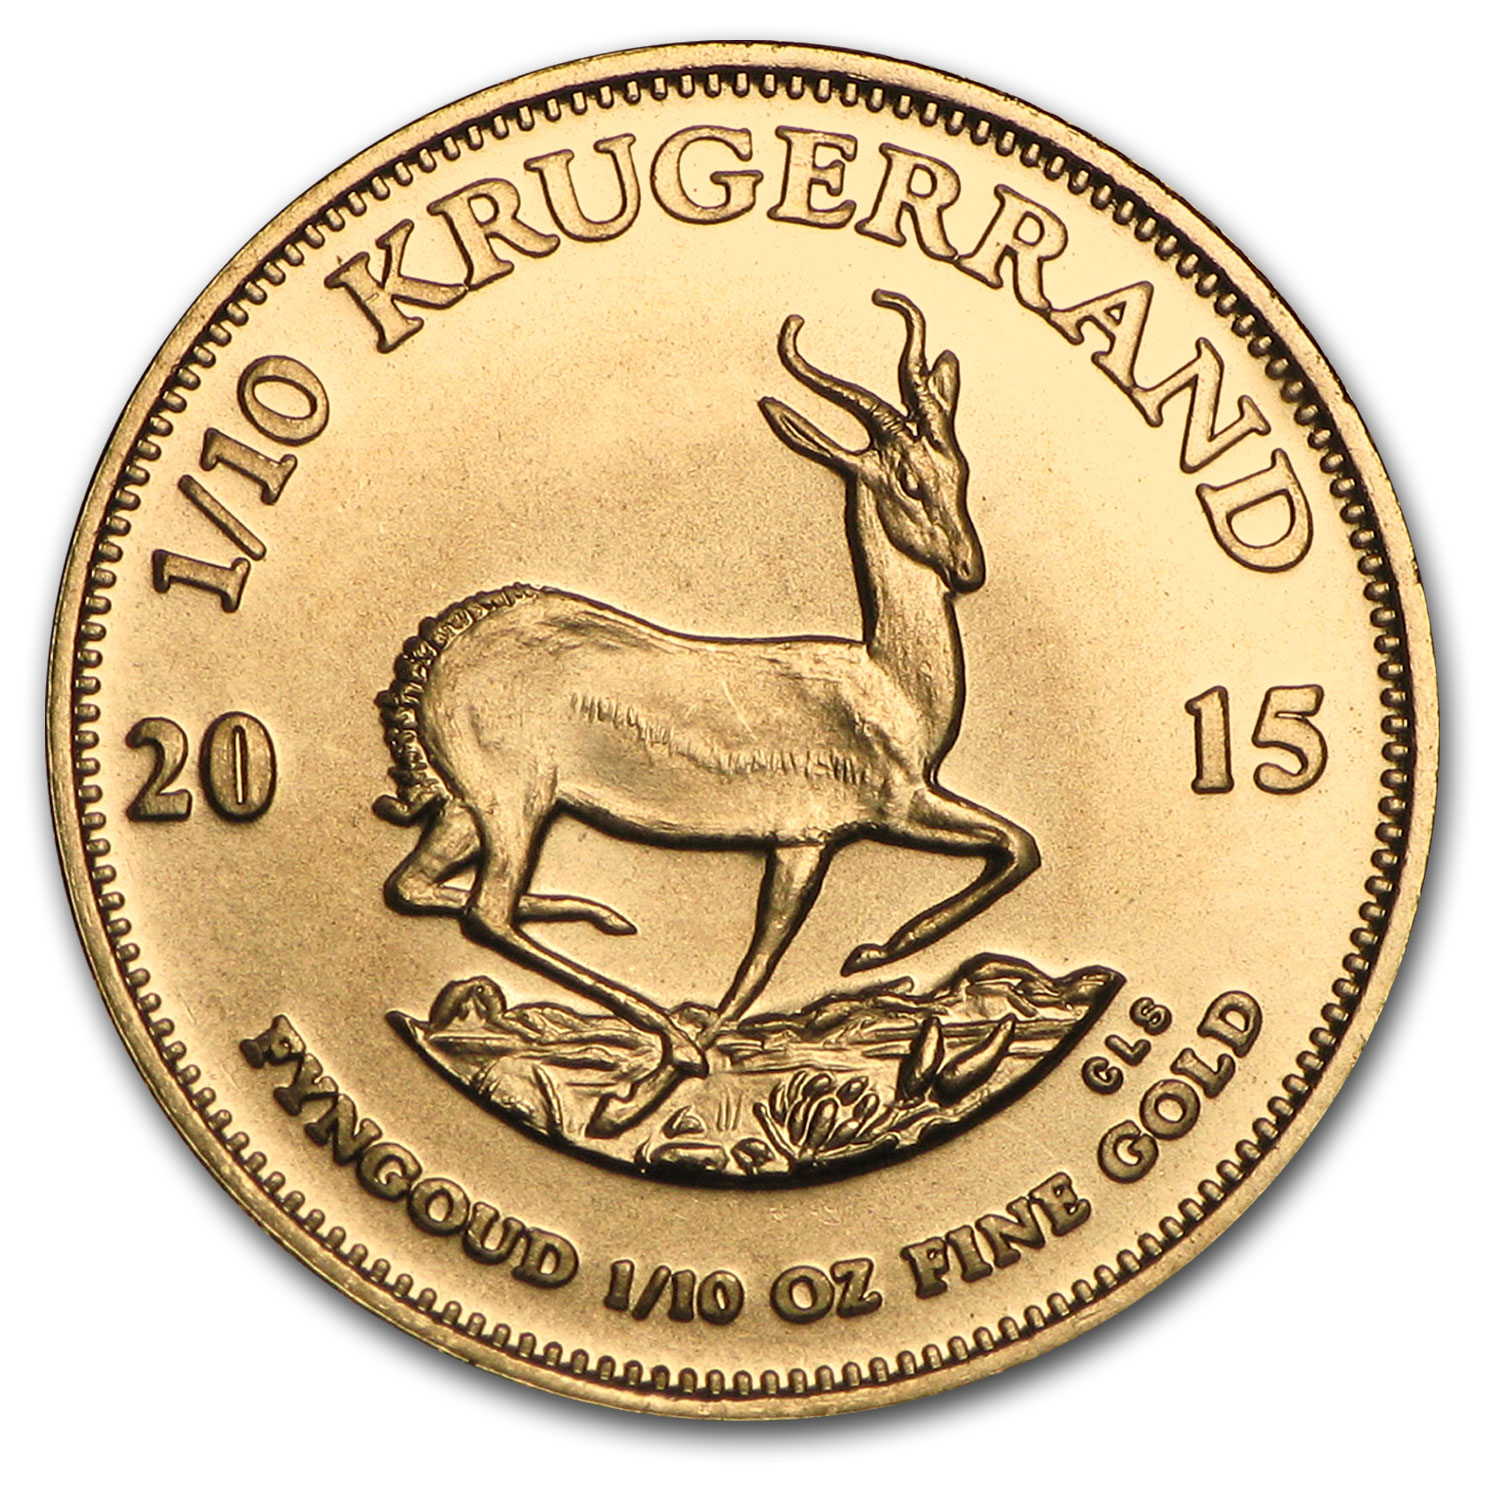 Buy 2015 South Africa 1/10 oz Gold Krugerrand